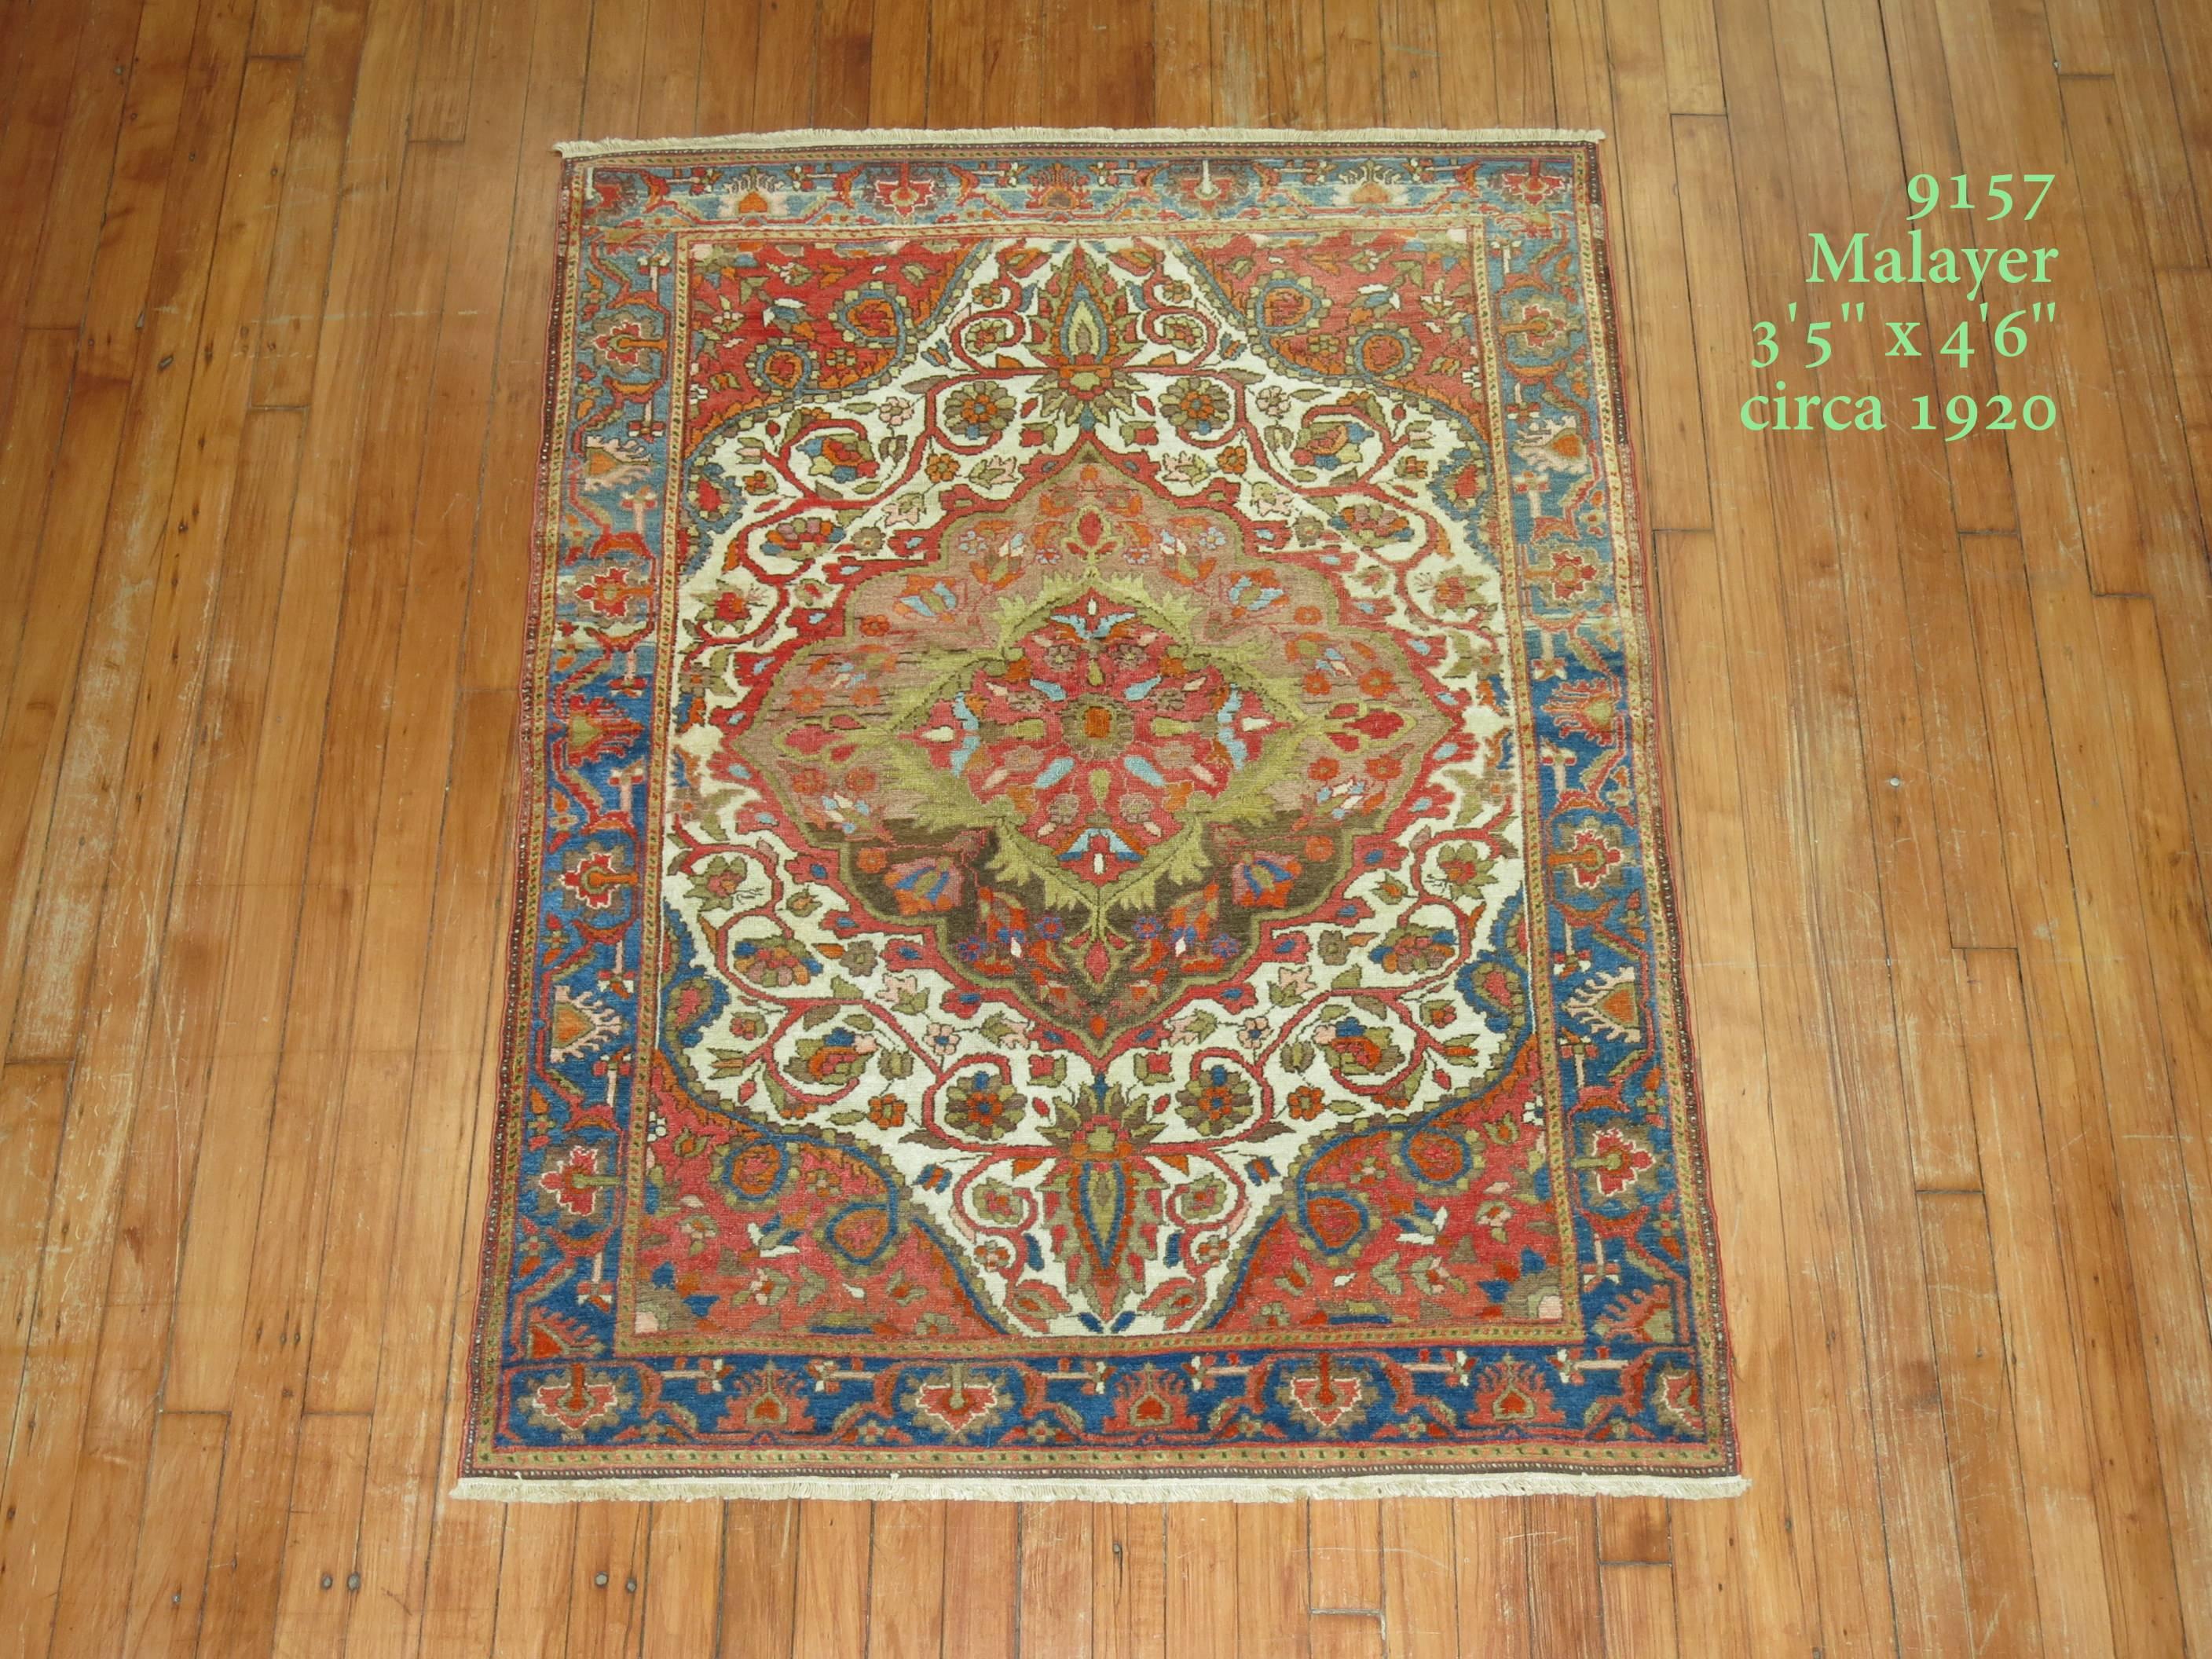 Un tapis persan Malayer coloré, formel et de qualité, de niveau connaisseur. Fond ivoire avec médaillon de couleur marron mutli doux, accents vert lime, coins de couleur orange rouille et bordure bleu ciel. Les tapis de cette qualité peuvent